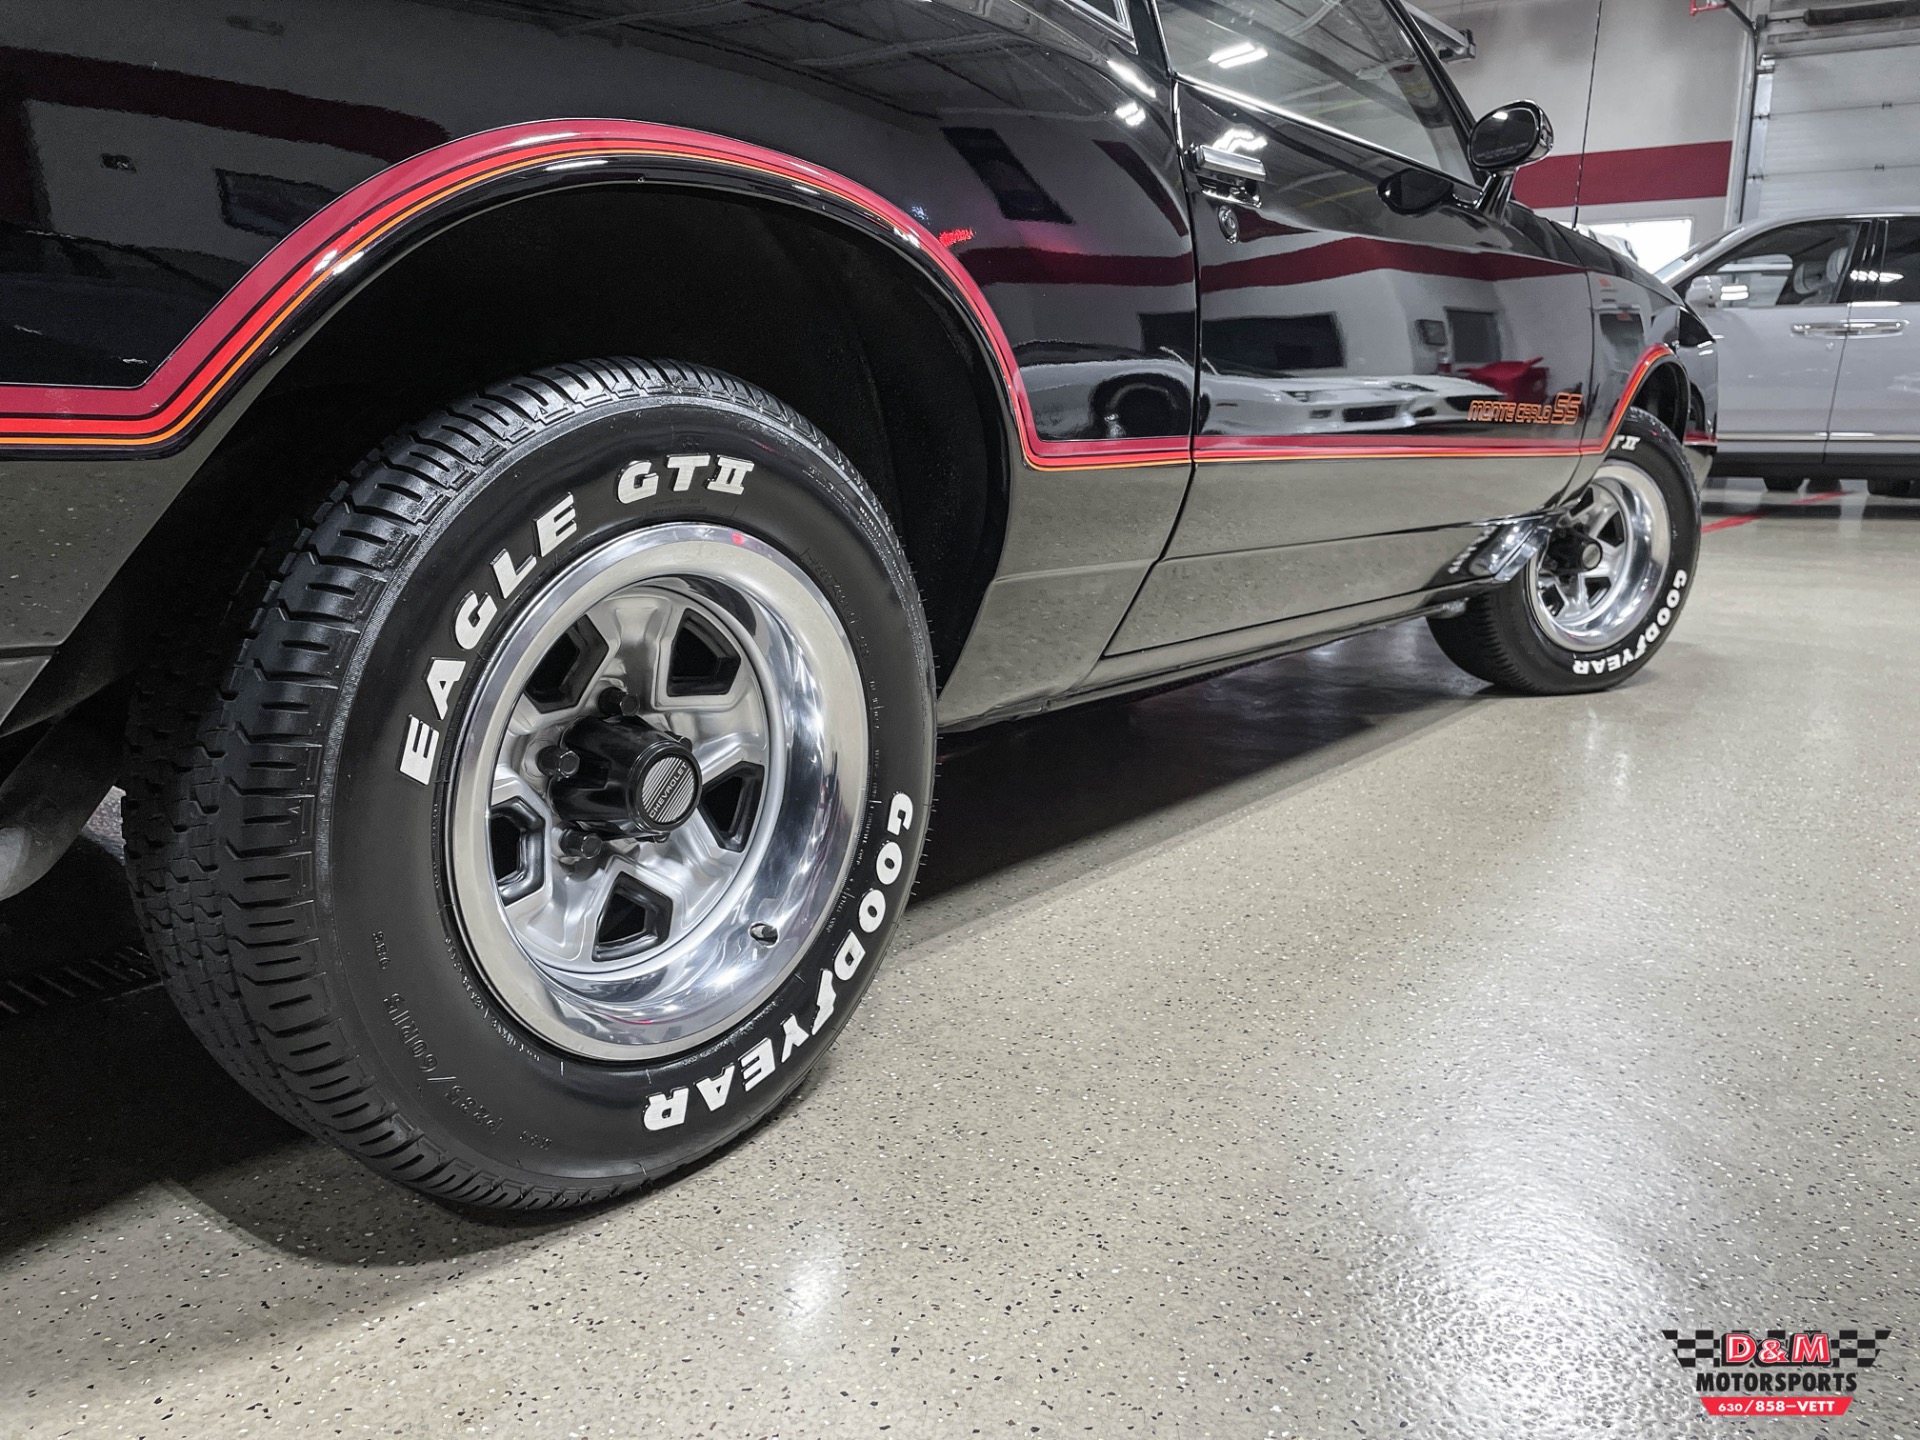 Used 1985 Chevrolet Monte Carlo SS | Glen Ellyn, IL